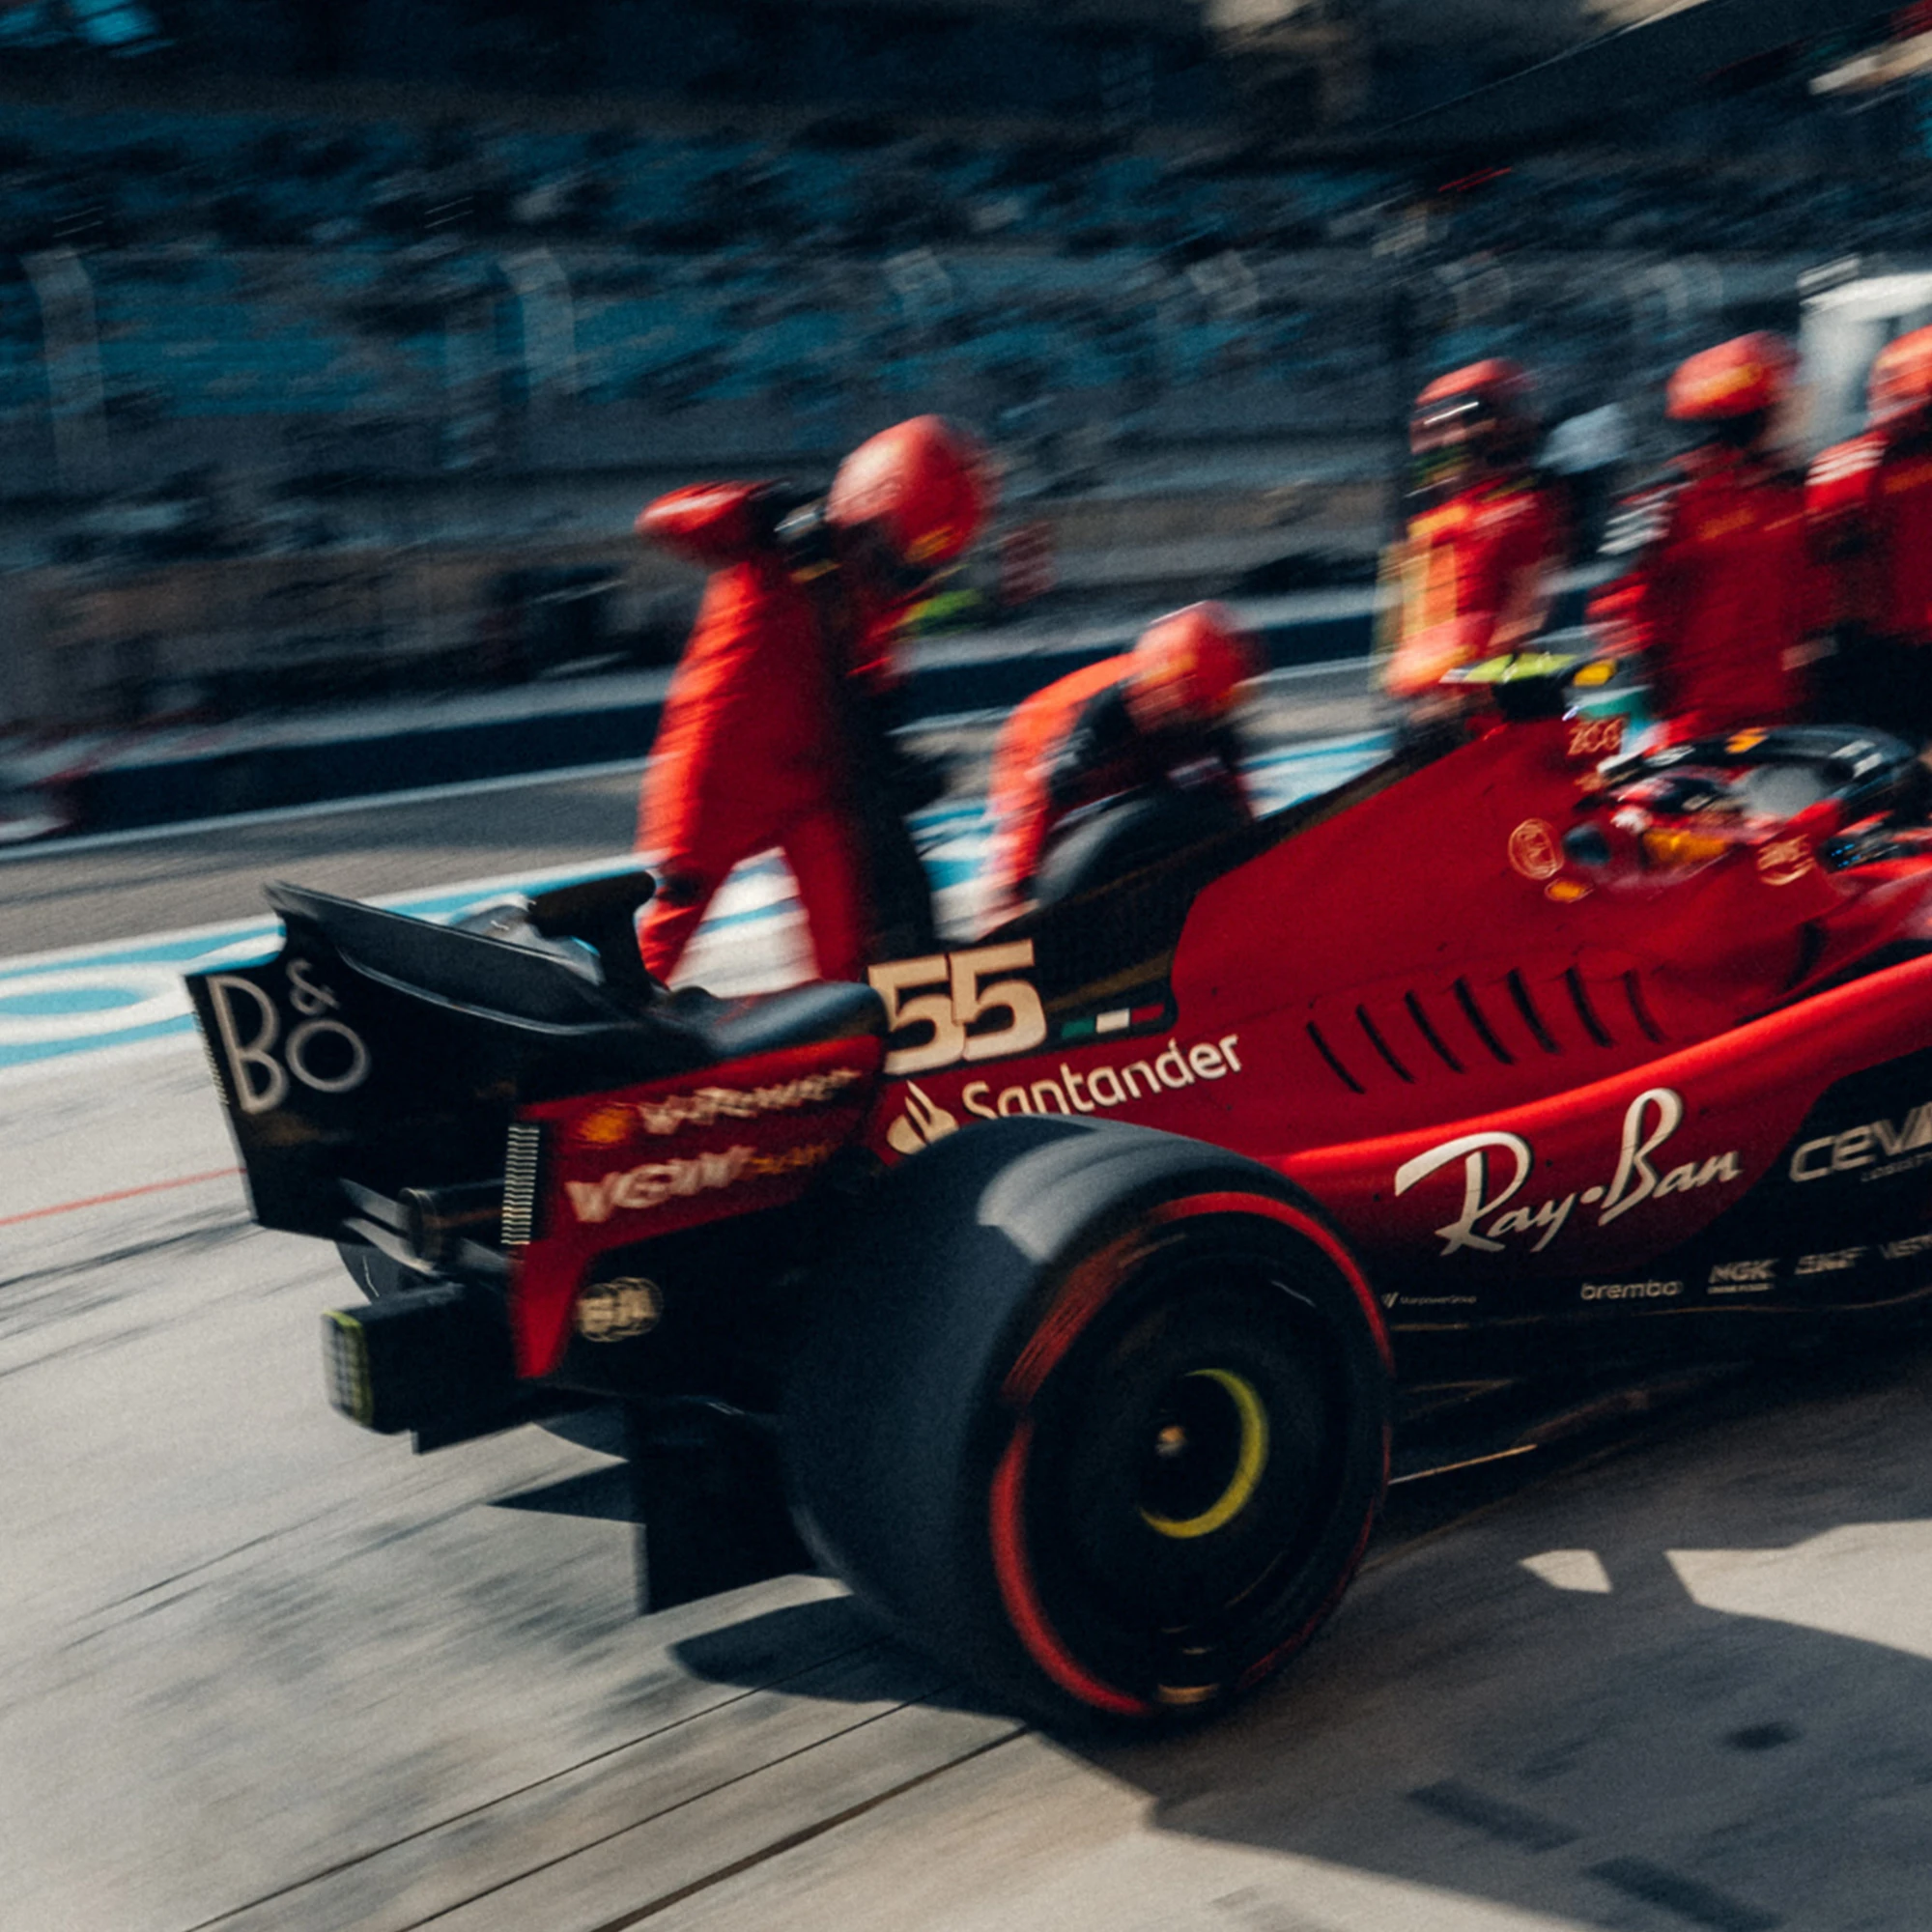 Ferrari pitstop during a F1 Grand Prix